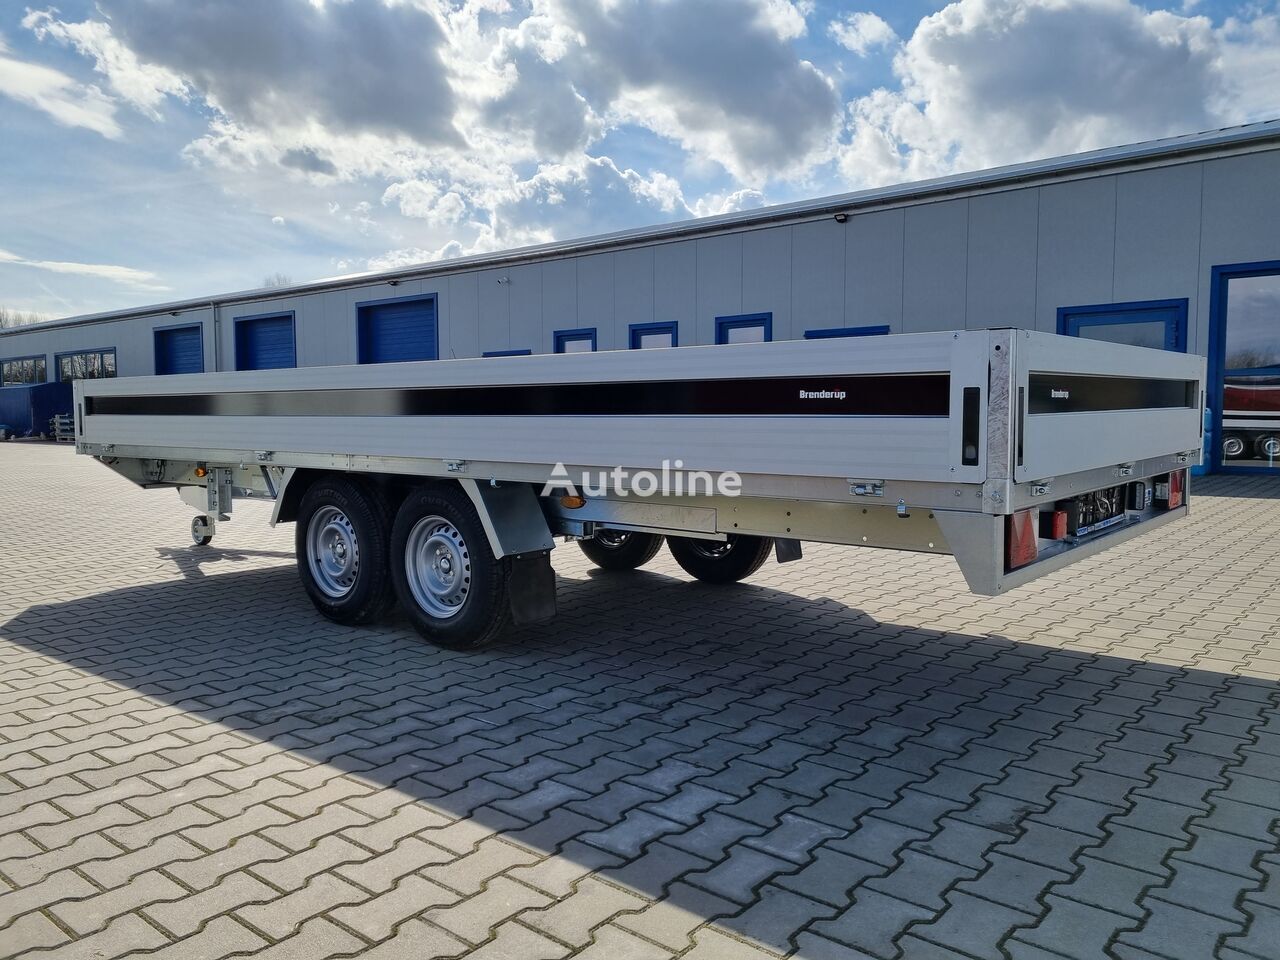 Nieuw Open/ Plateau aanhangwagen Brenderup 5520 WATB 3,5T GVW 517x204 cm 5m long trailer platform: afbeelding 8